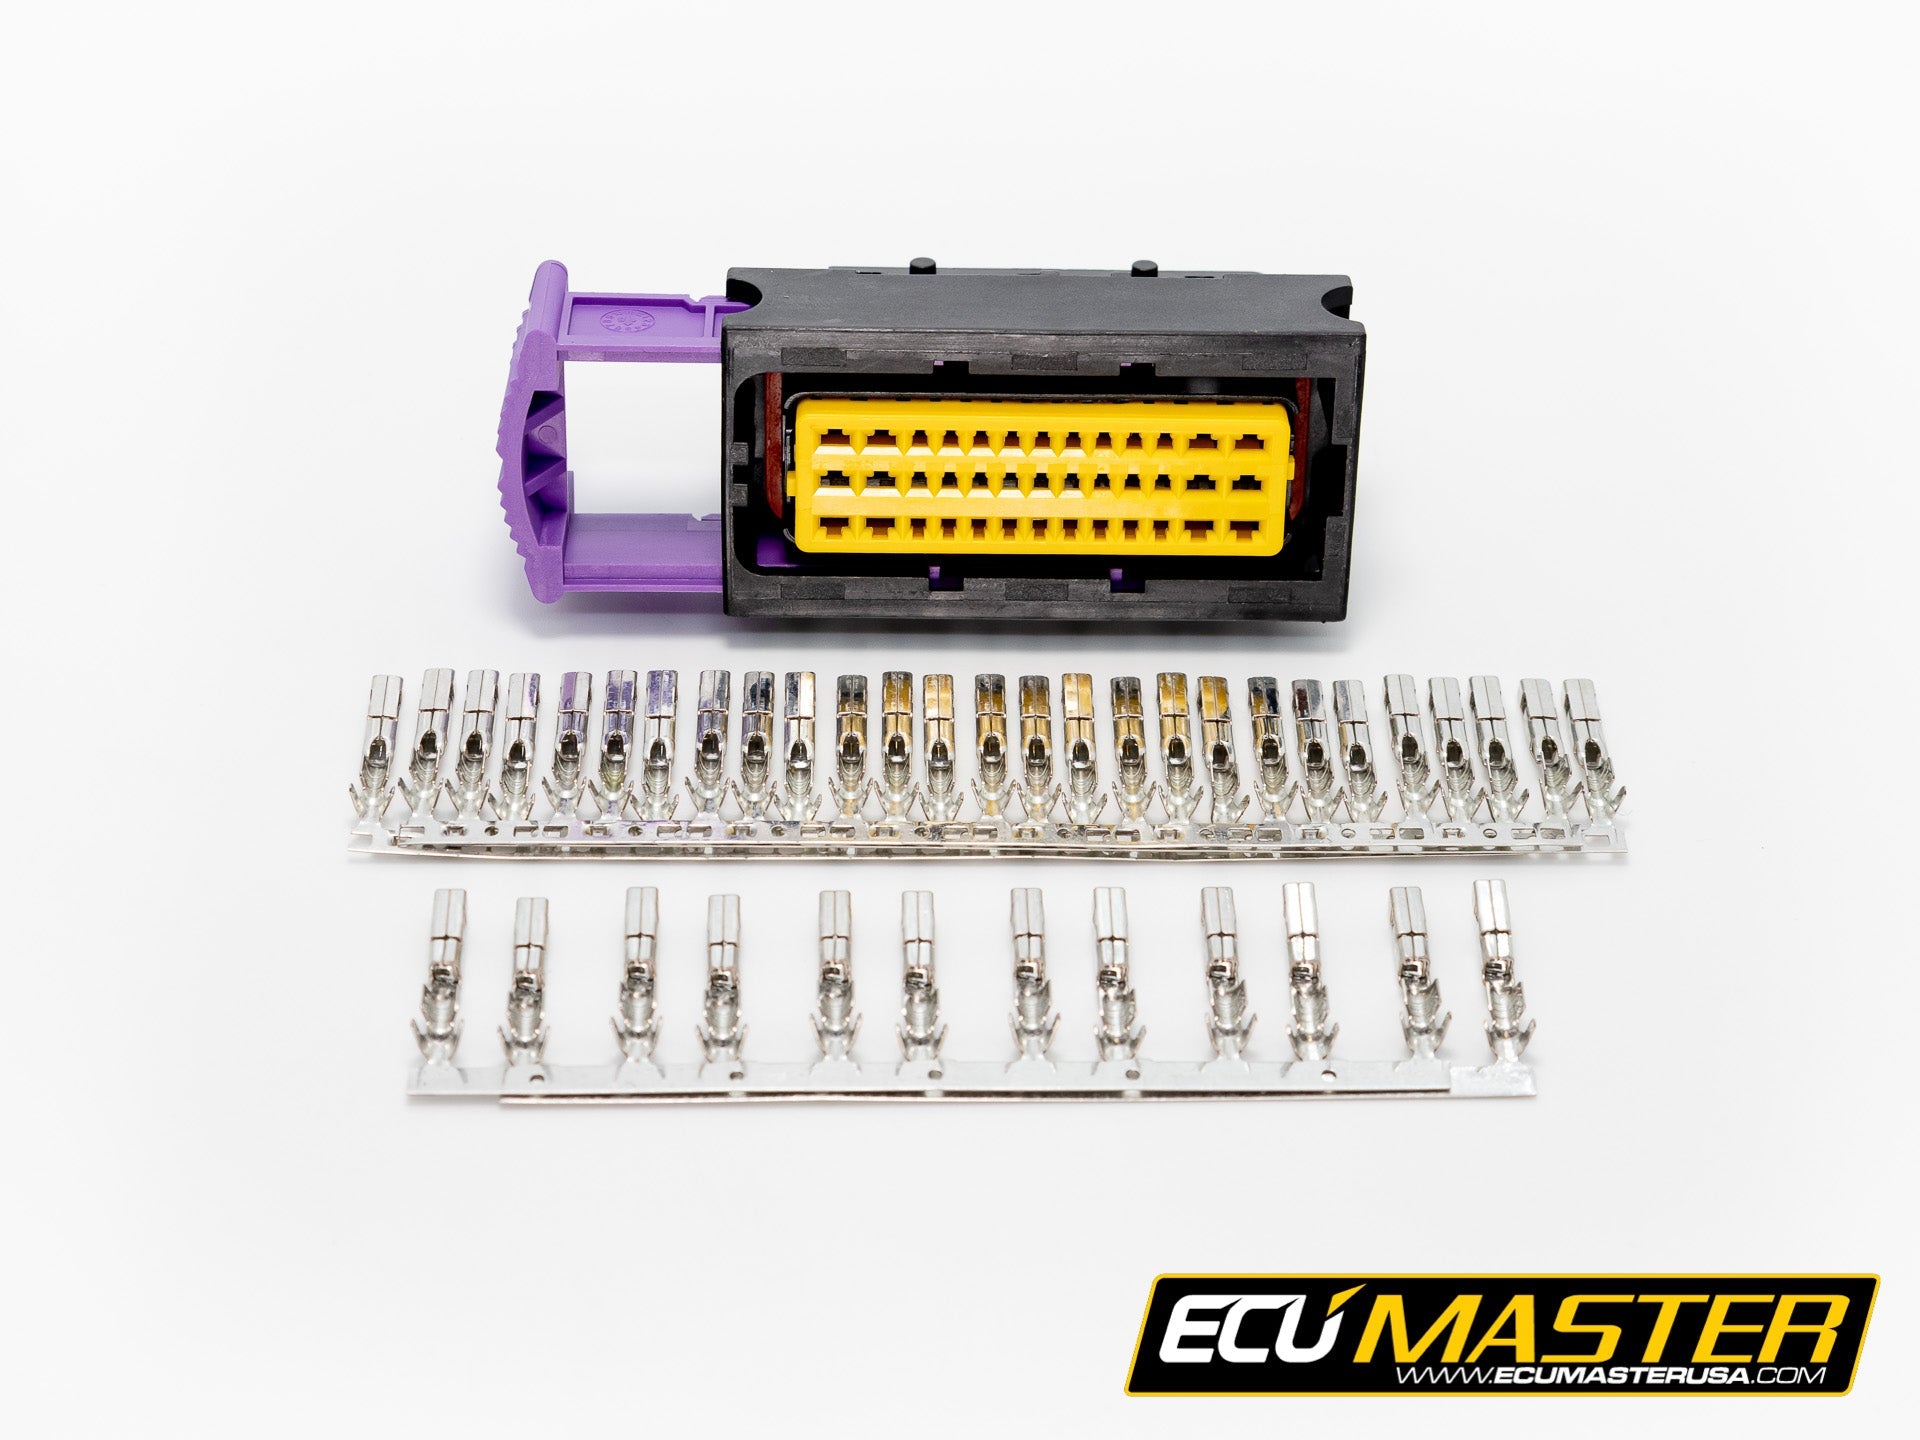 Connector and Terminal Kit for ECUMaster ADU – ECUMaster USA